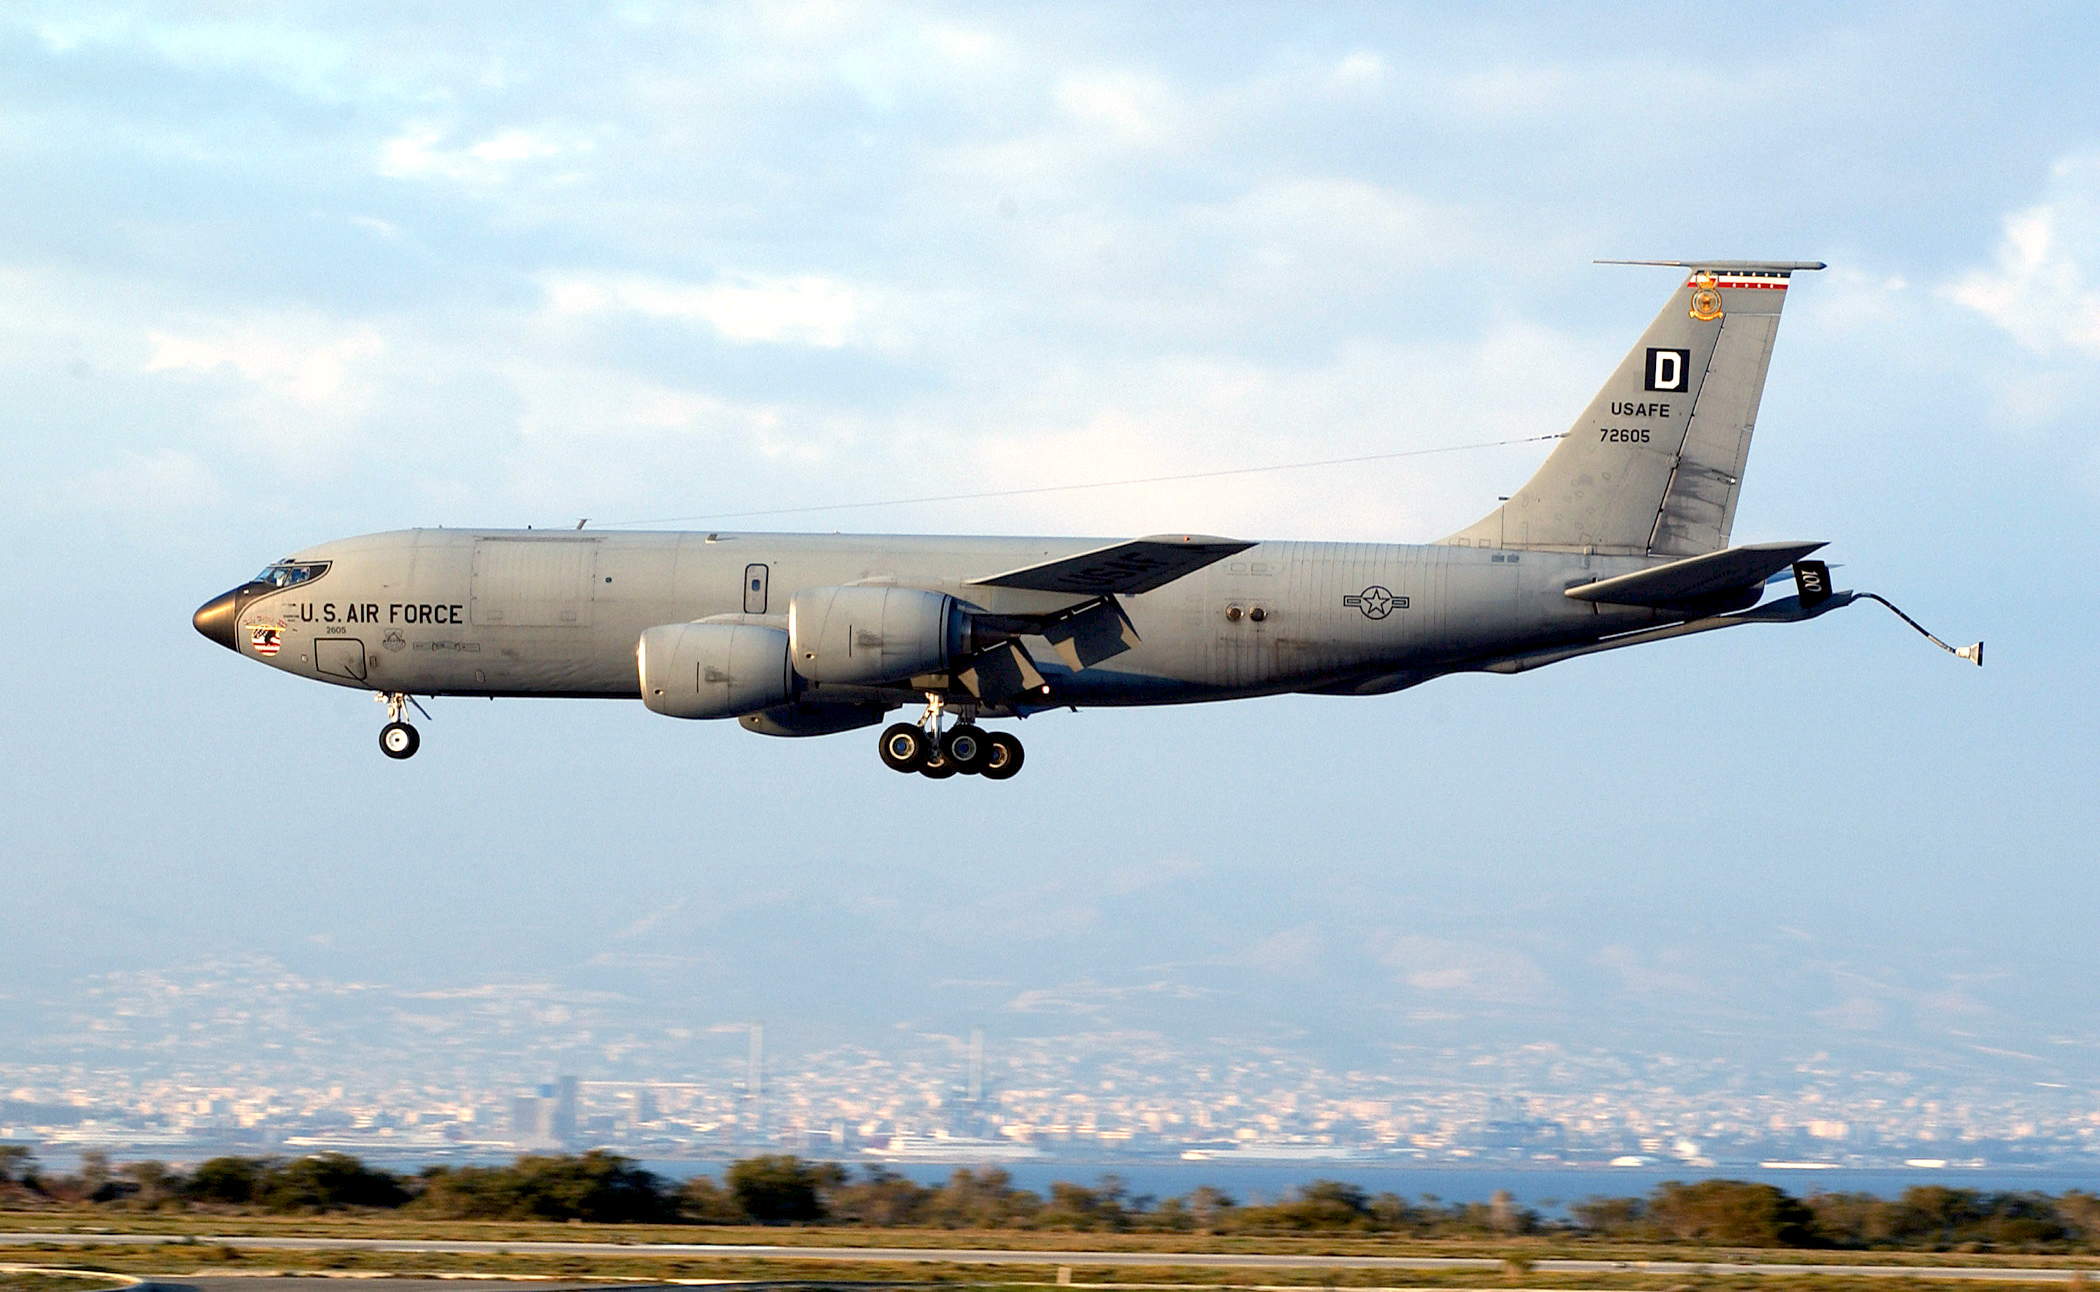 Trolling de nivel 80: Un avión militar estadounidense "dibujó" un pene en el cielo sobre una base aérea rusa